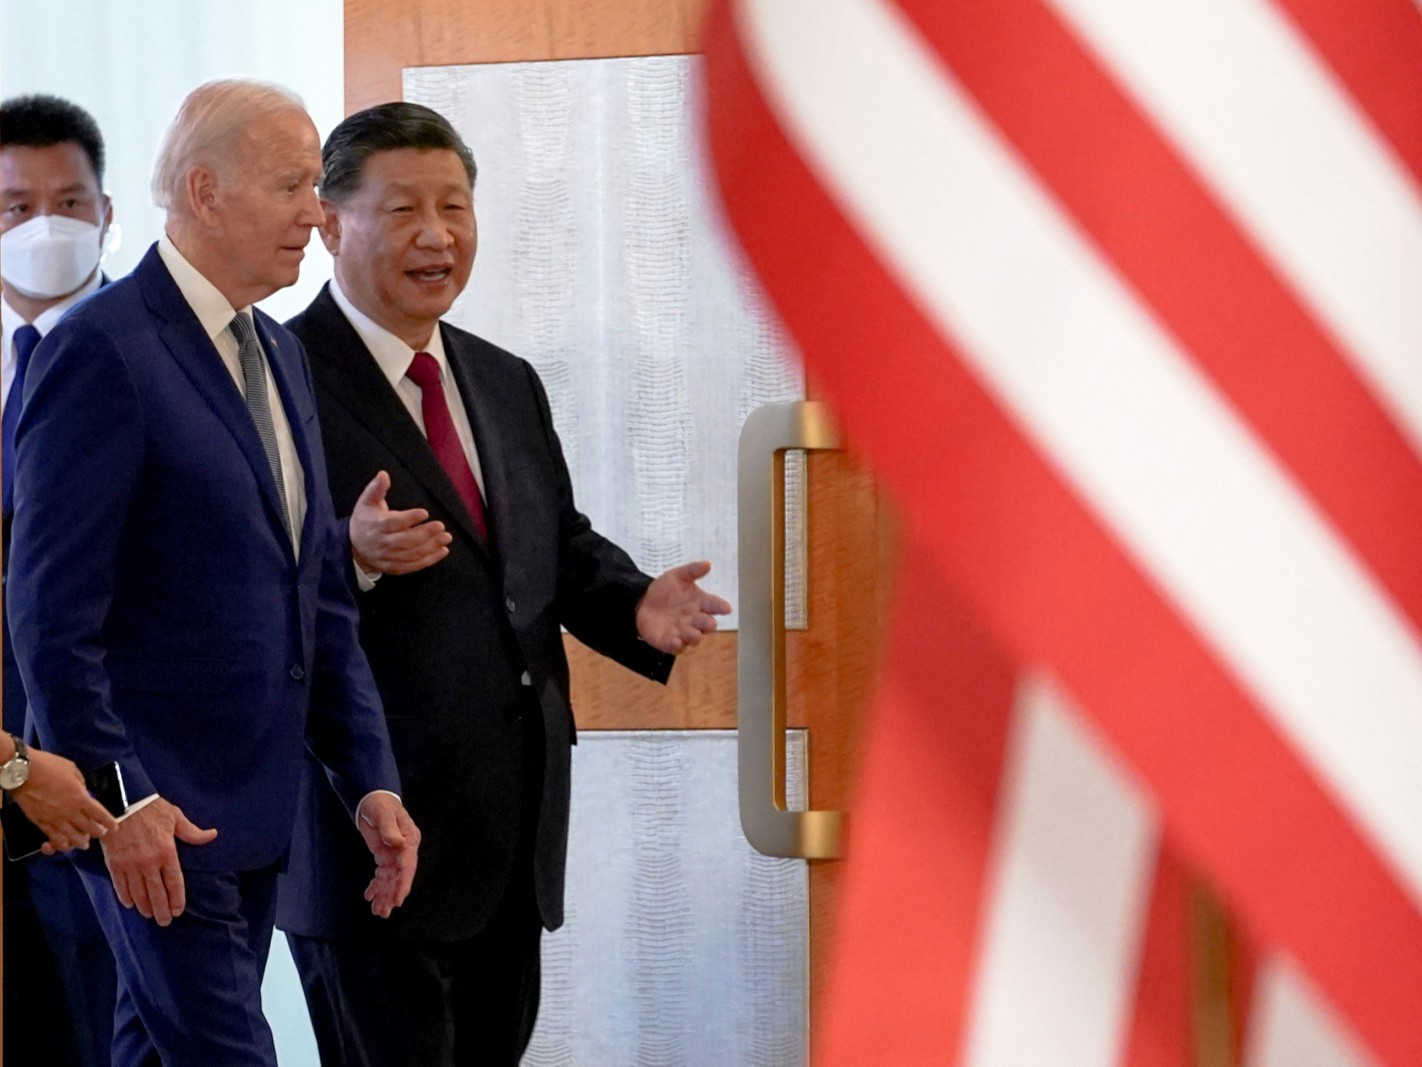 ВИДЕО: "АНУ-ын Ерөнхийлөгч Жо Байден, БНХАУ-ын дарга Ши Жиньпин нар Сан Франциско хотод биечлэн уулзалт хийнэ" гэж мэдэгджээ